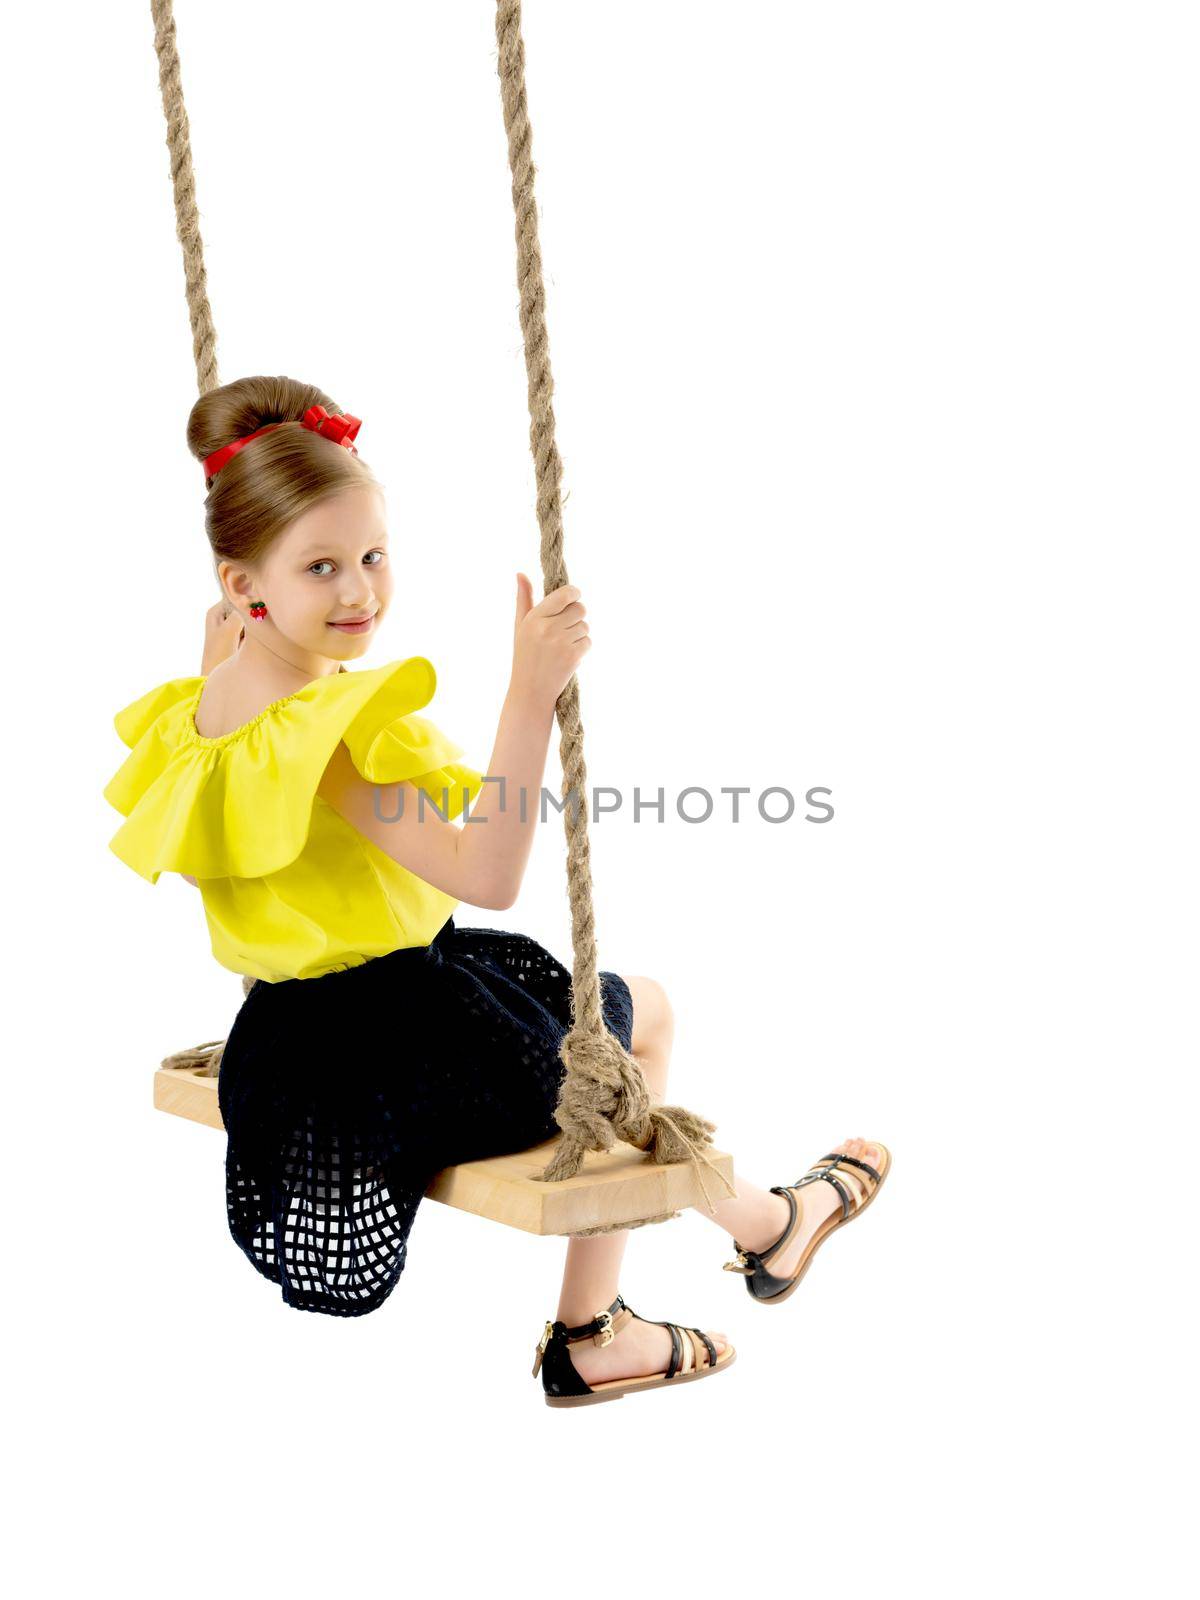 Joyful little girl swinging on a swing. by kolesnikov_studio